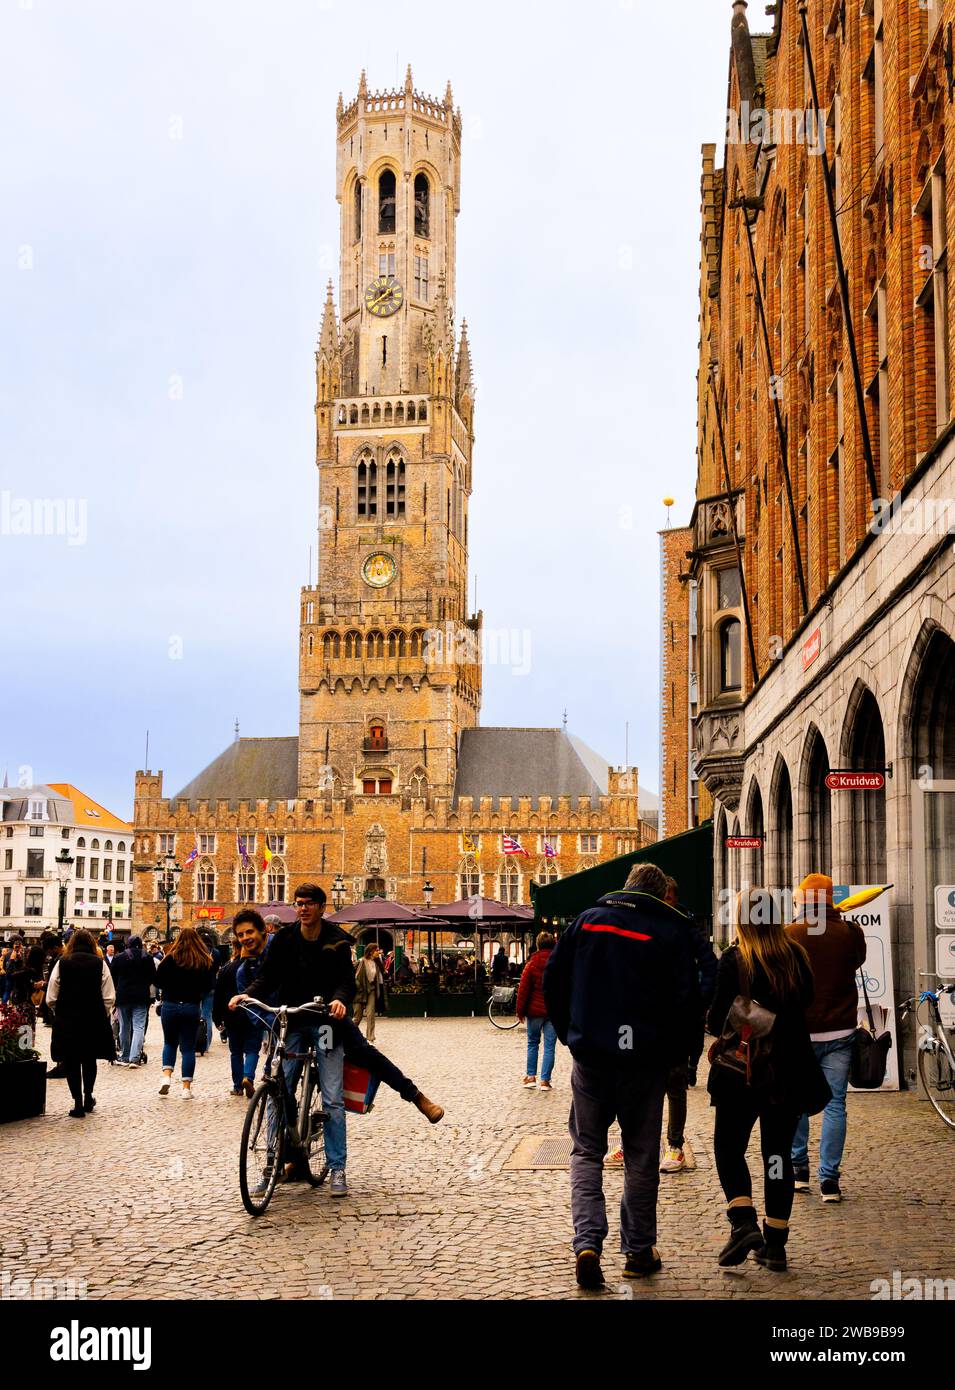 Place du marché central marché avec le beffroi à Bruges Belguim Banque D'Images